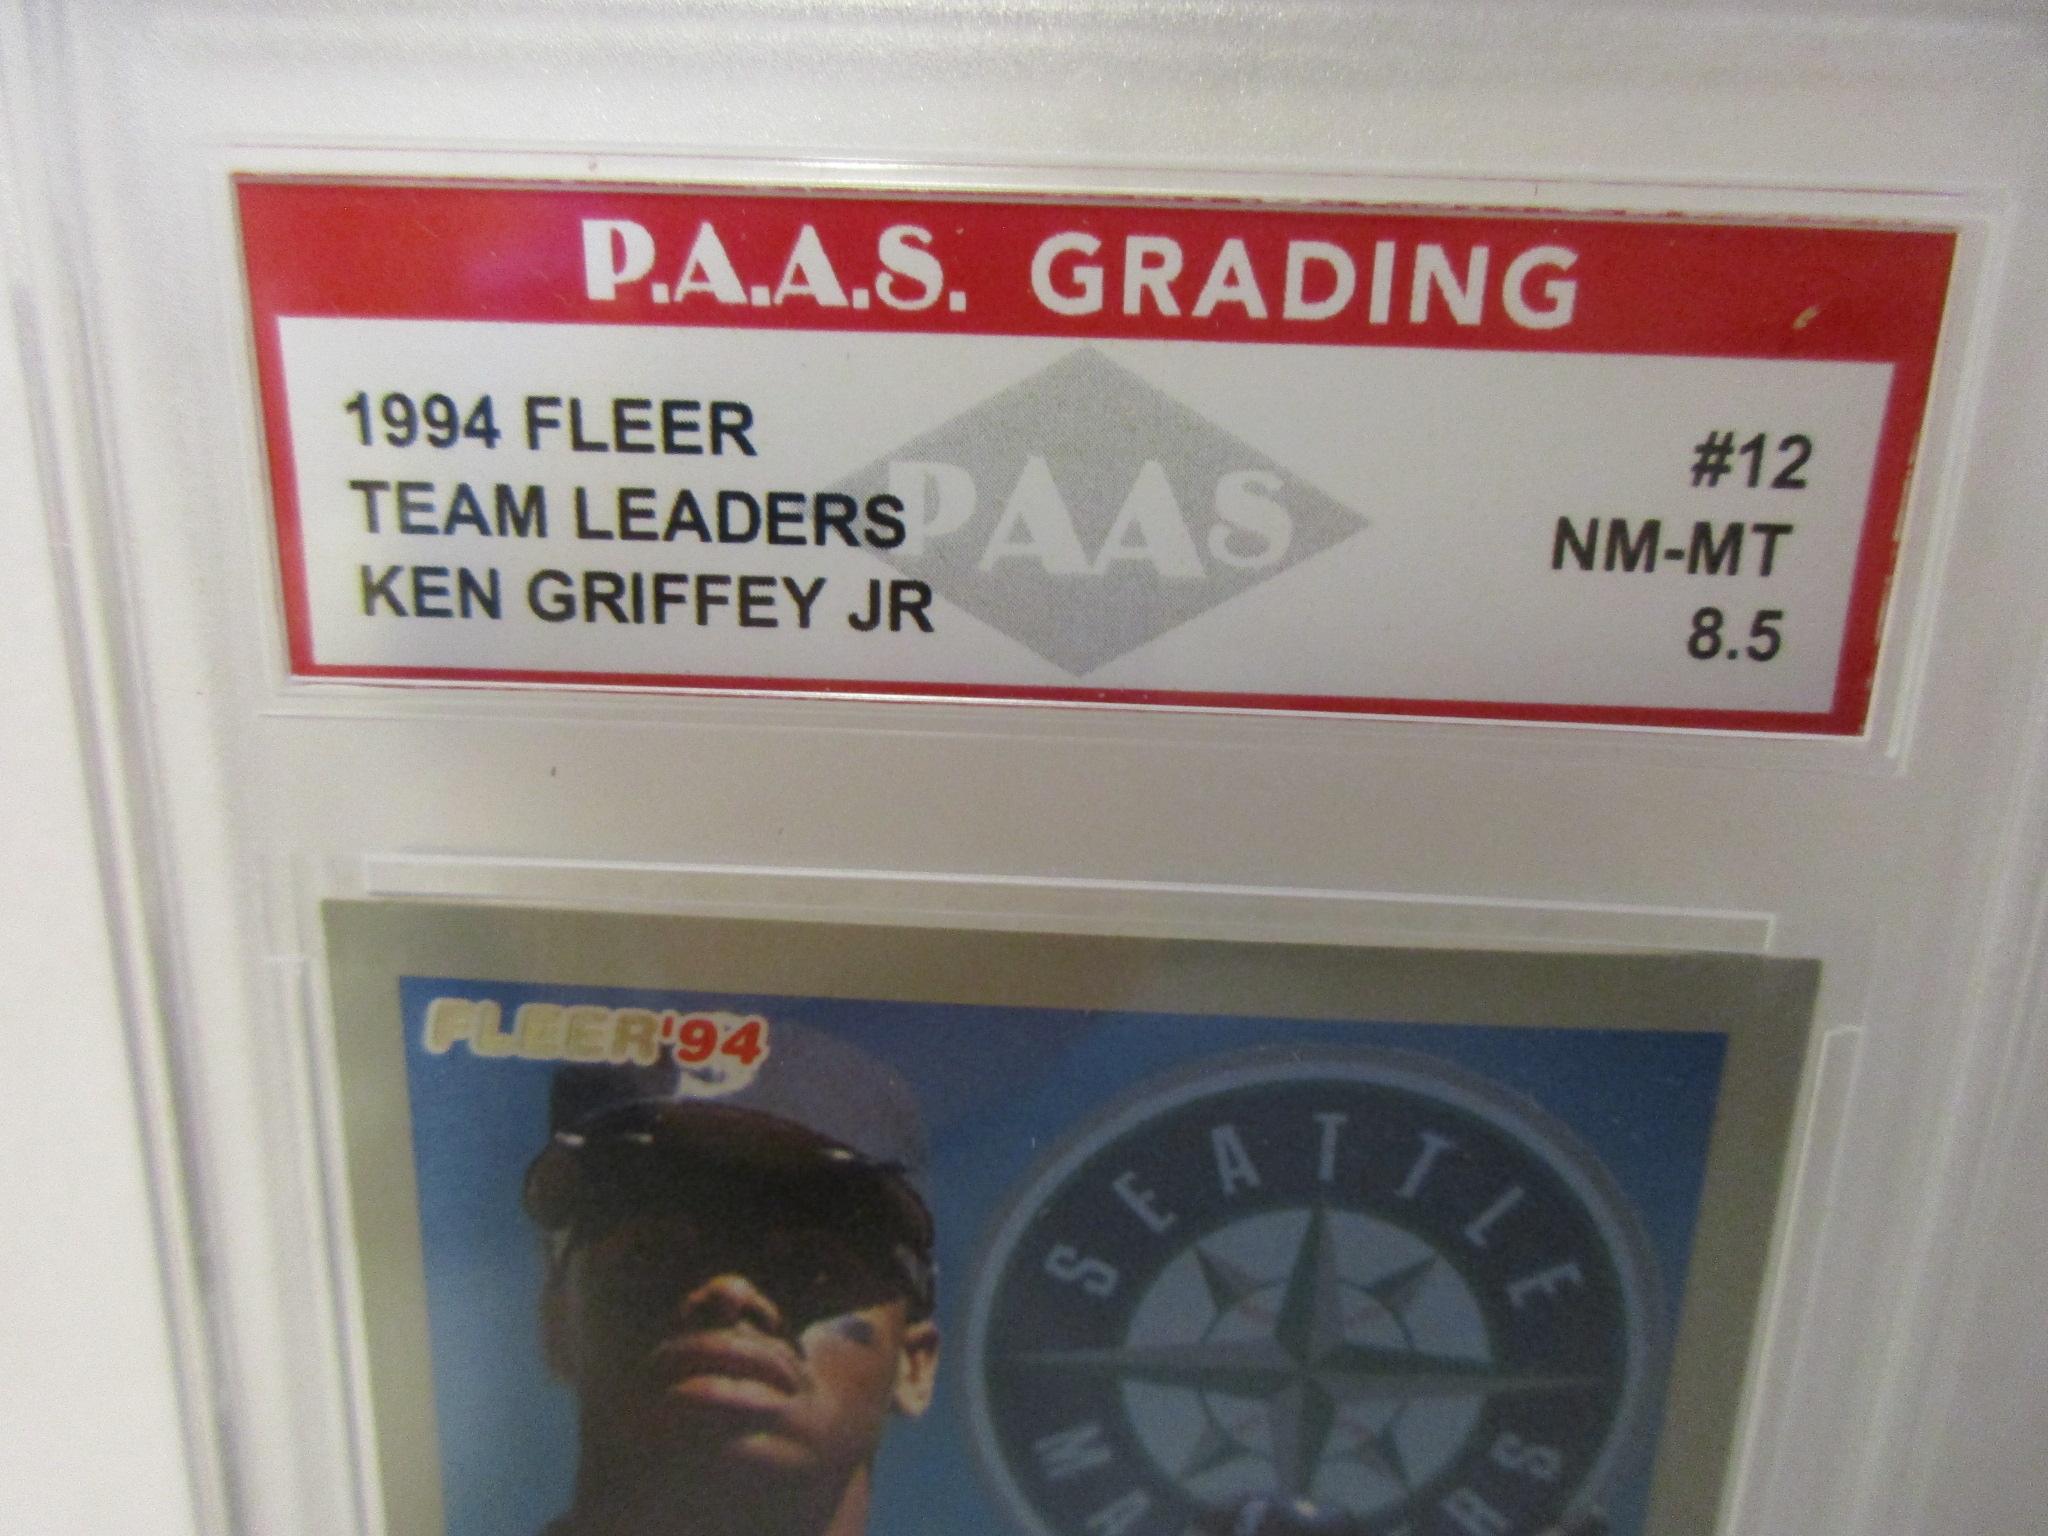 Ken Griffey Jr Mariners 1994 Fleer Team Leaders #12 graded PAAS NM-MT 8.5